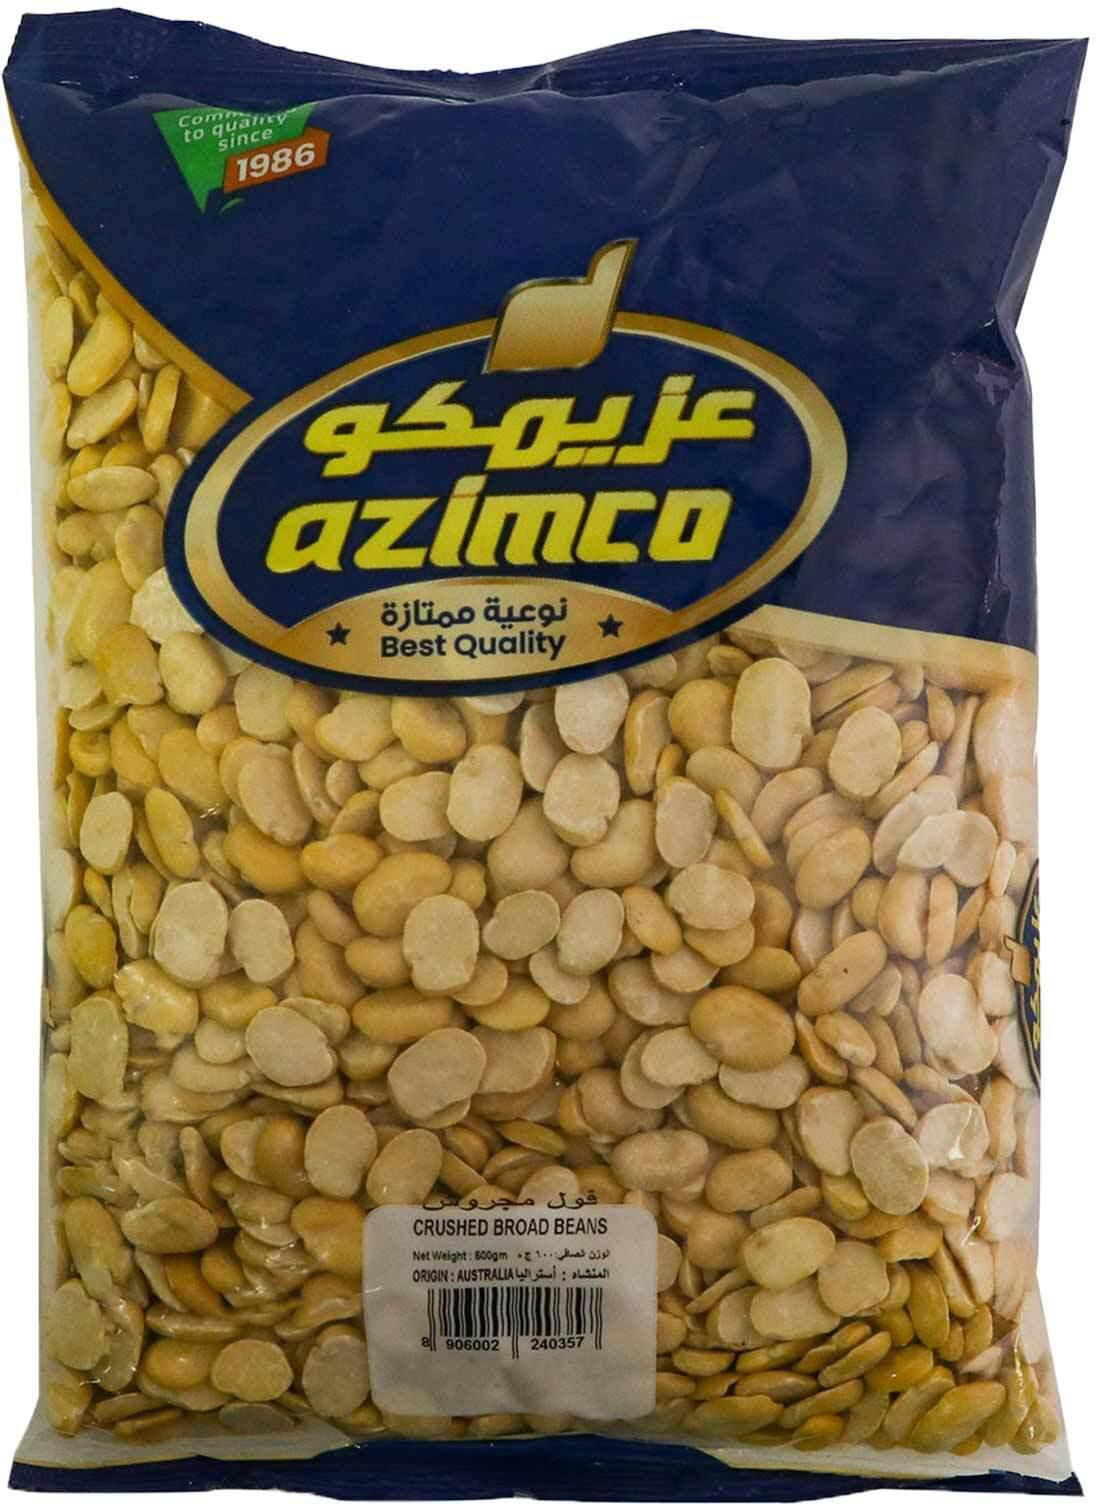 Azimco wheat crushed 600g